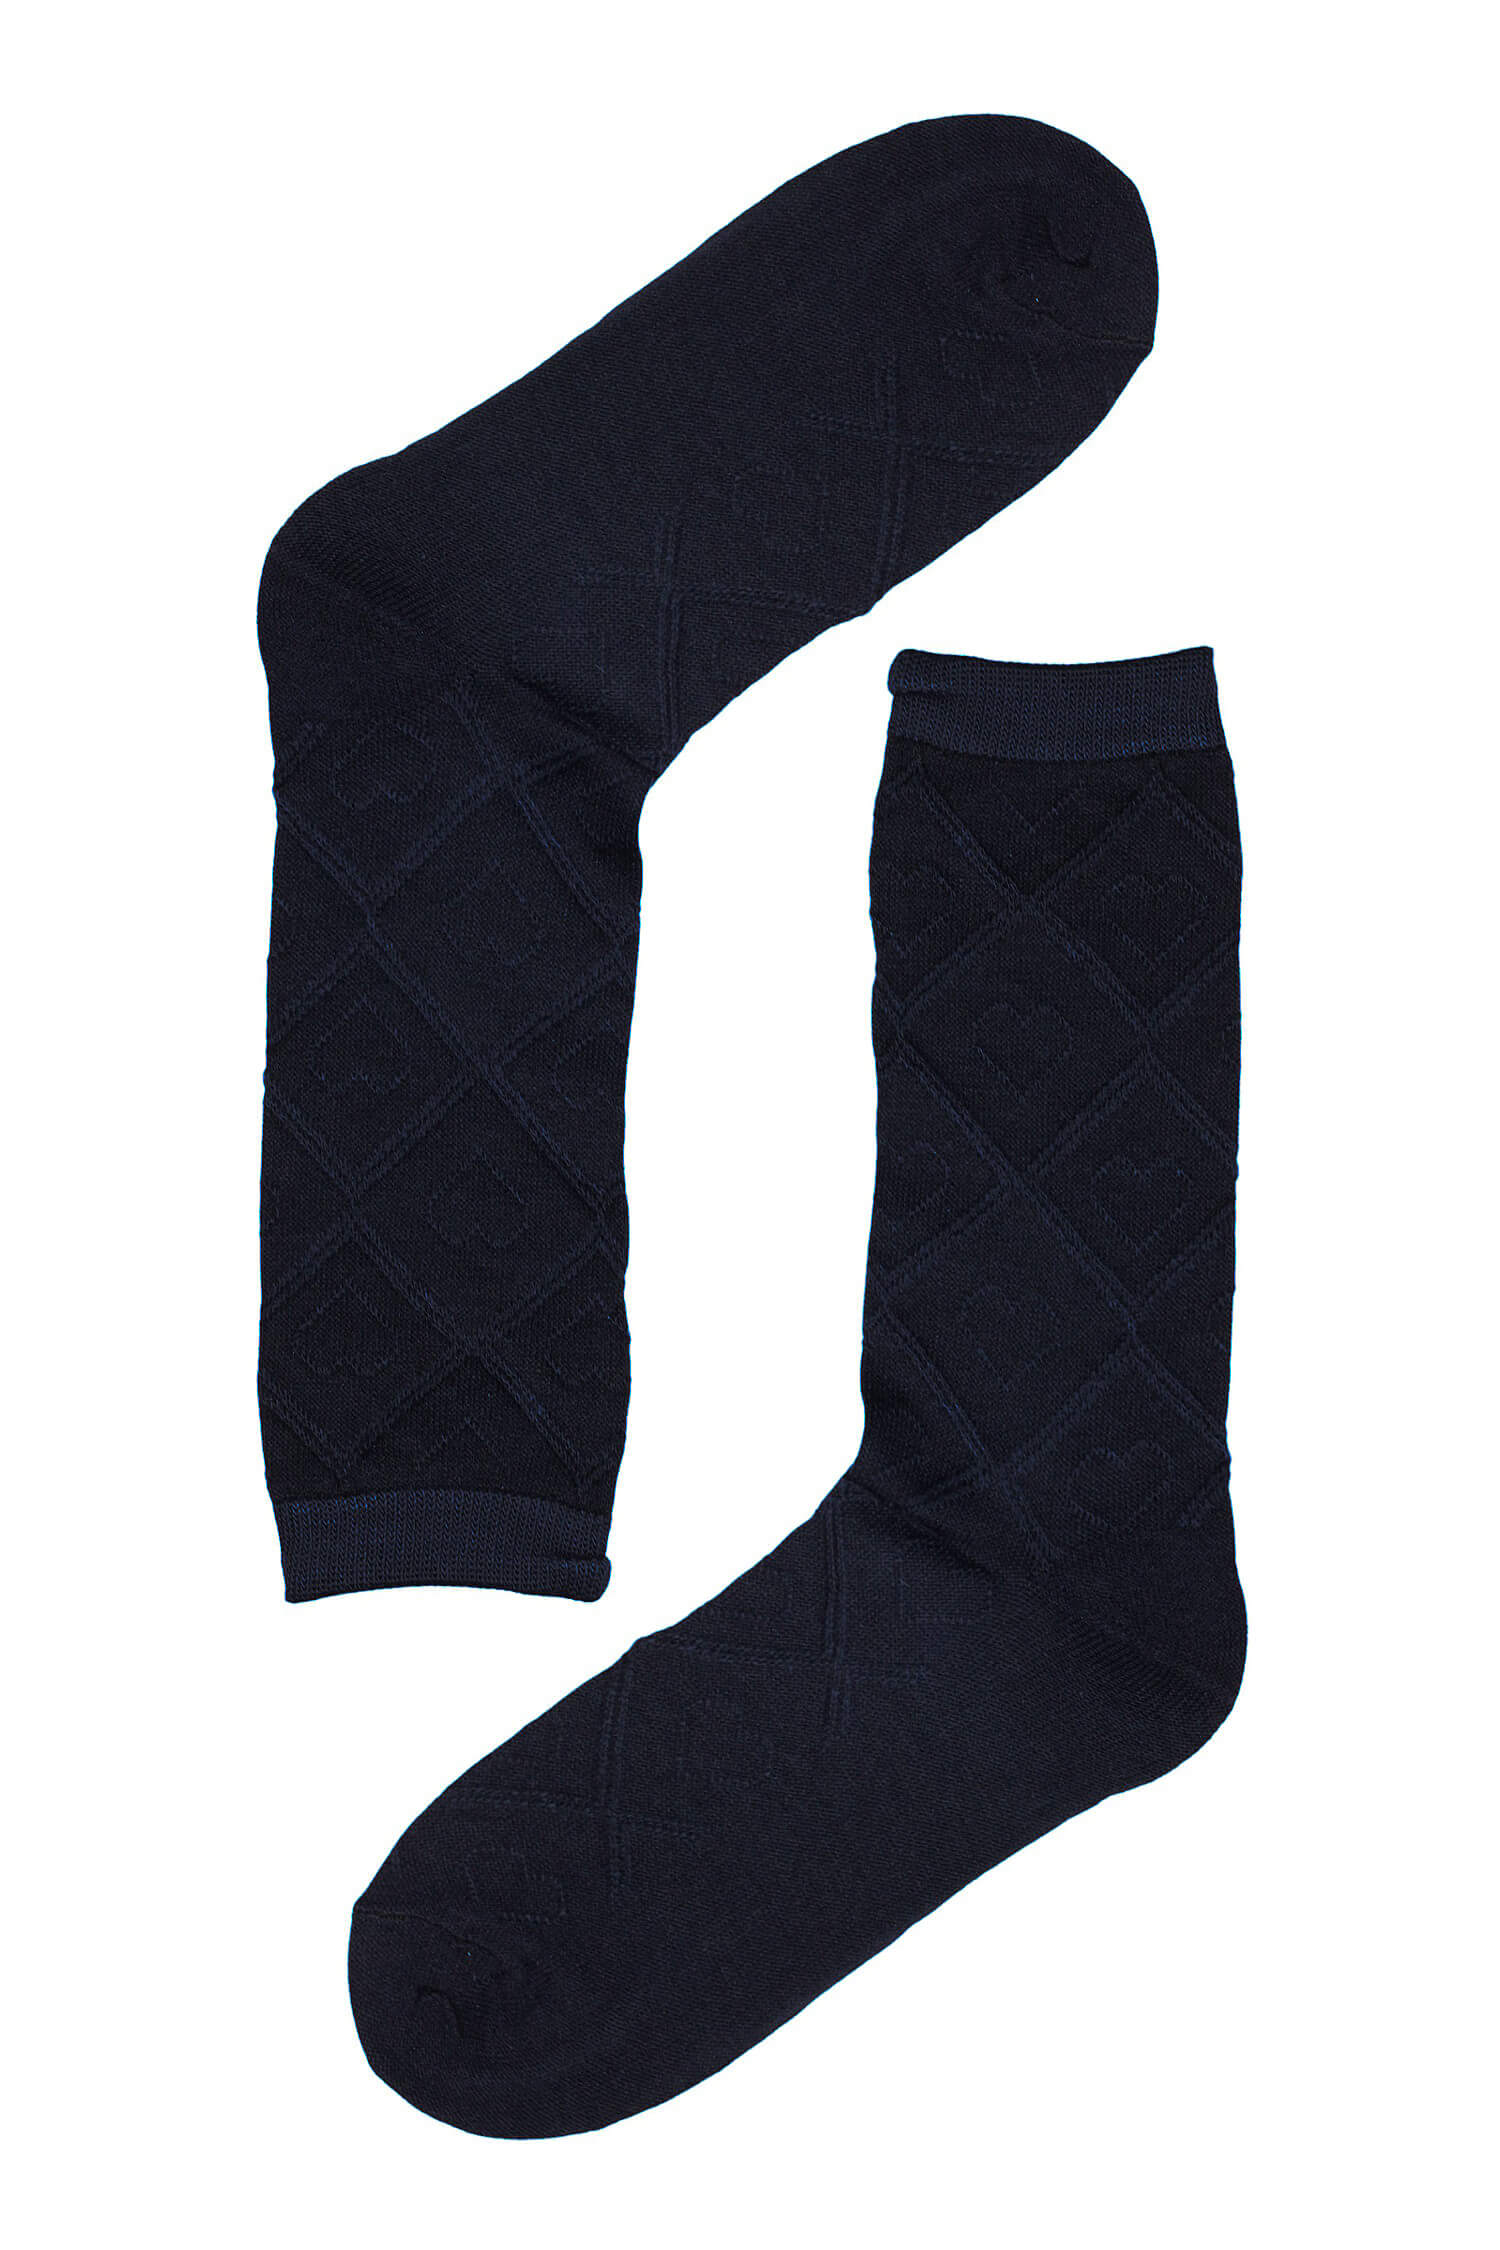 Dámské ponožky se vzorem srdíček SK-236 39-41 tmavě modrá